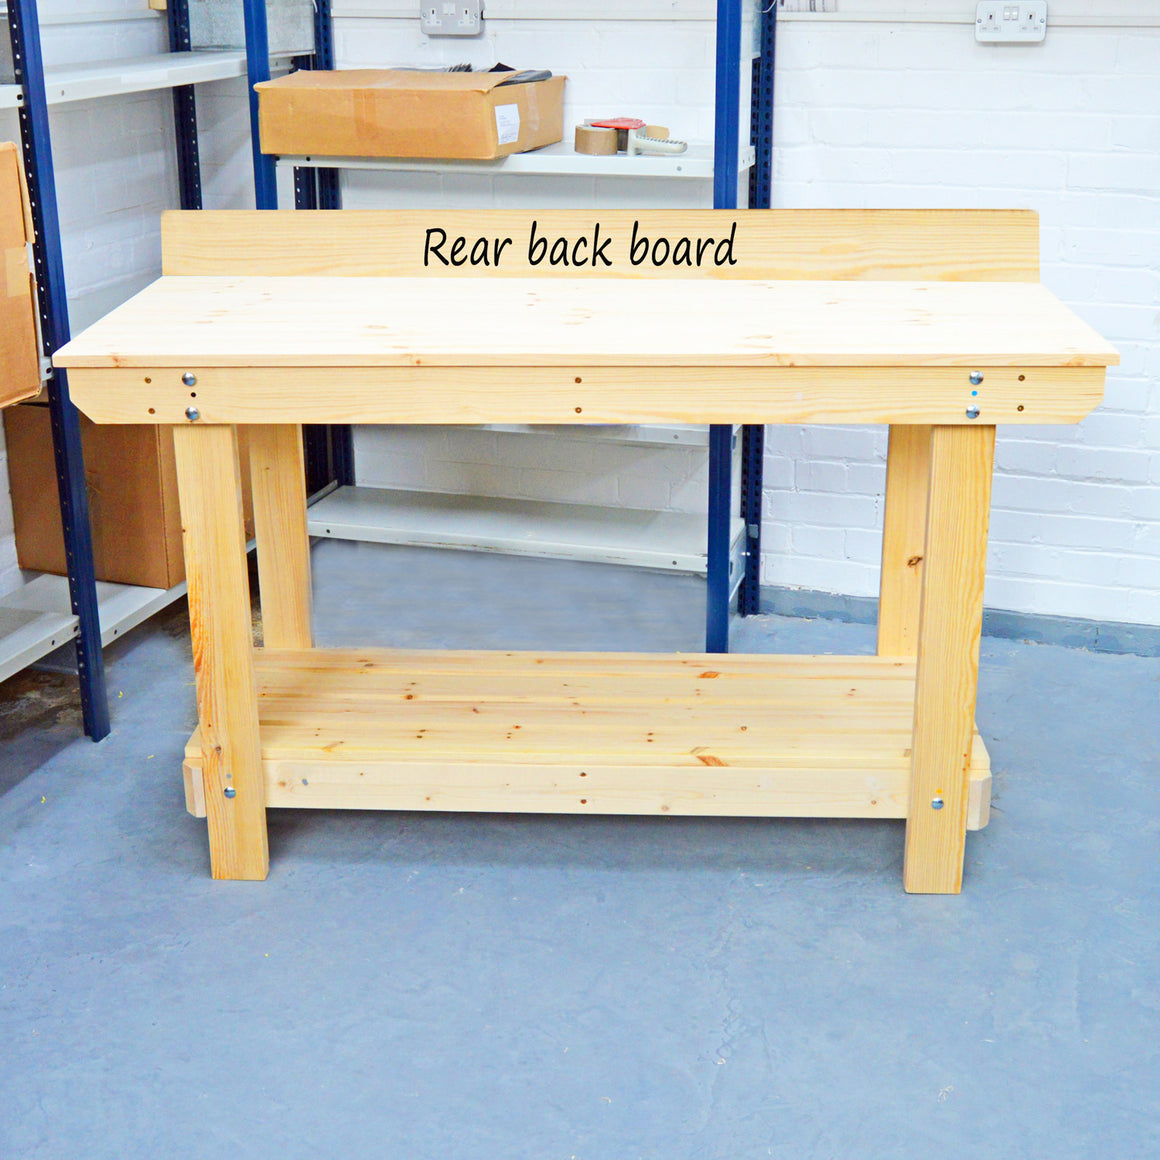 rear backboard for workbench